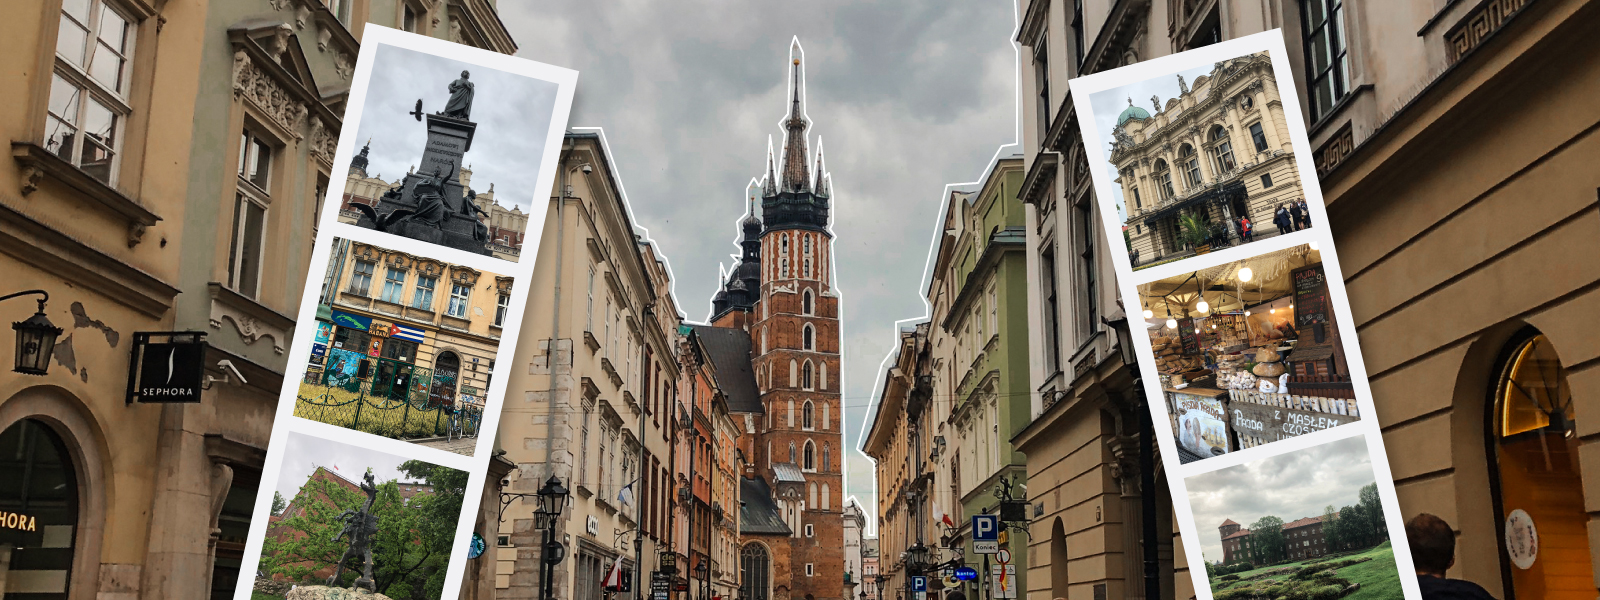 Turismo por Cracovia, qué hacer y qué ver. Blog de viajes.